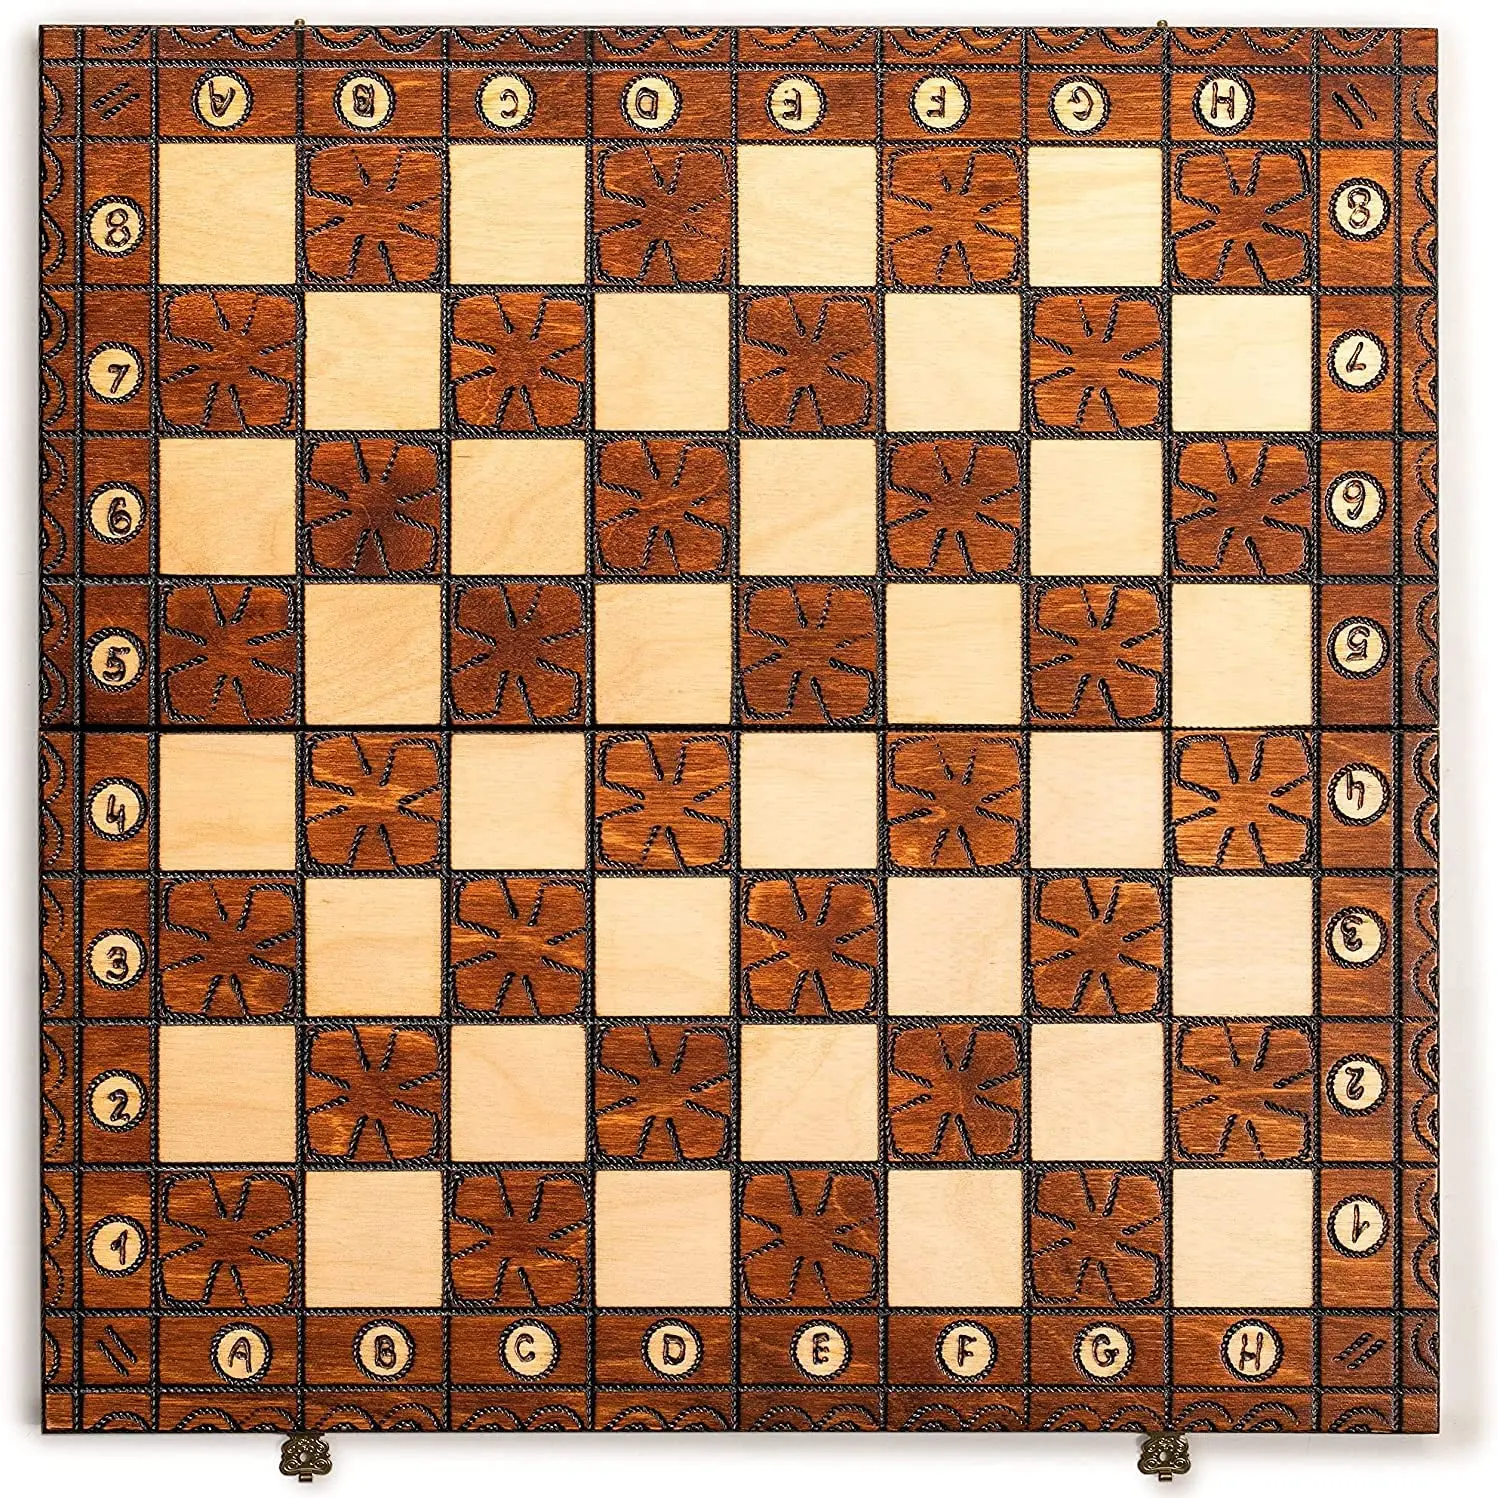 Jogo de xadrez de estratégia grande de metal de luxo, xadrez, retrô,  banhado a cobre, conjunto de xadrez para adultos, conjunto de tabuleiro  portátil, caixa de madeira, conjunto de xadrez dobrável